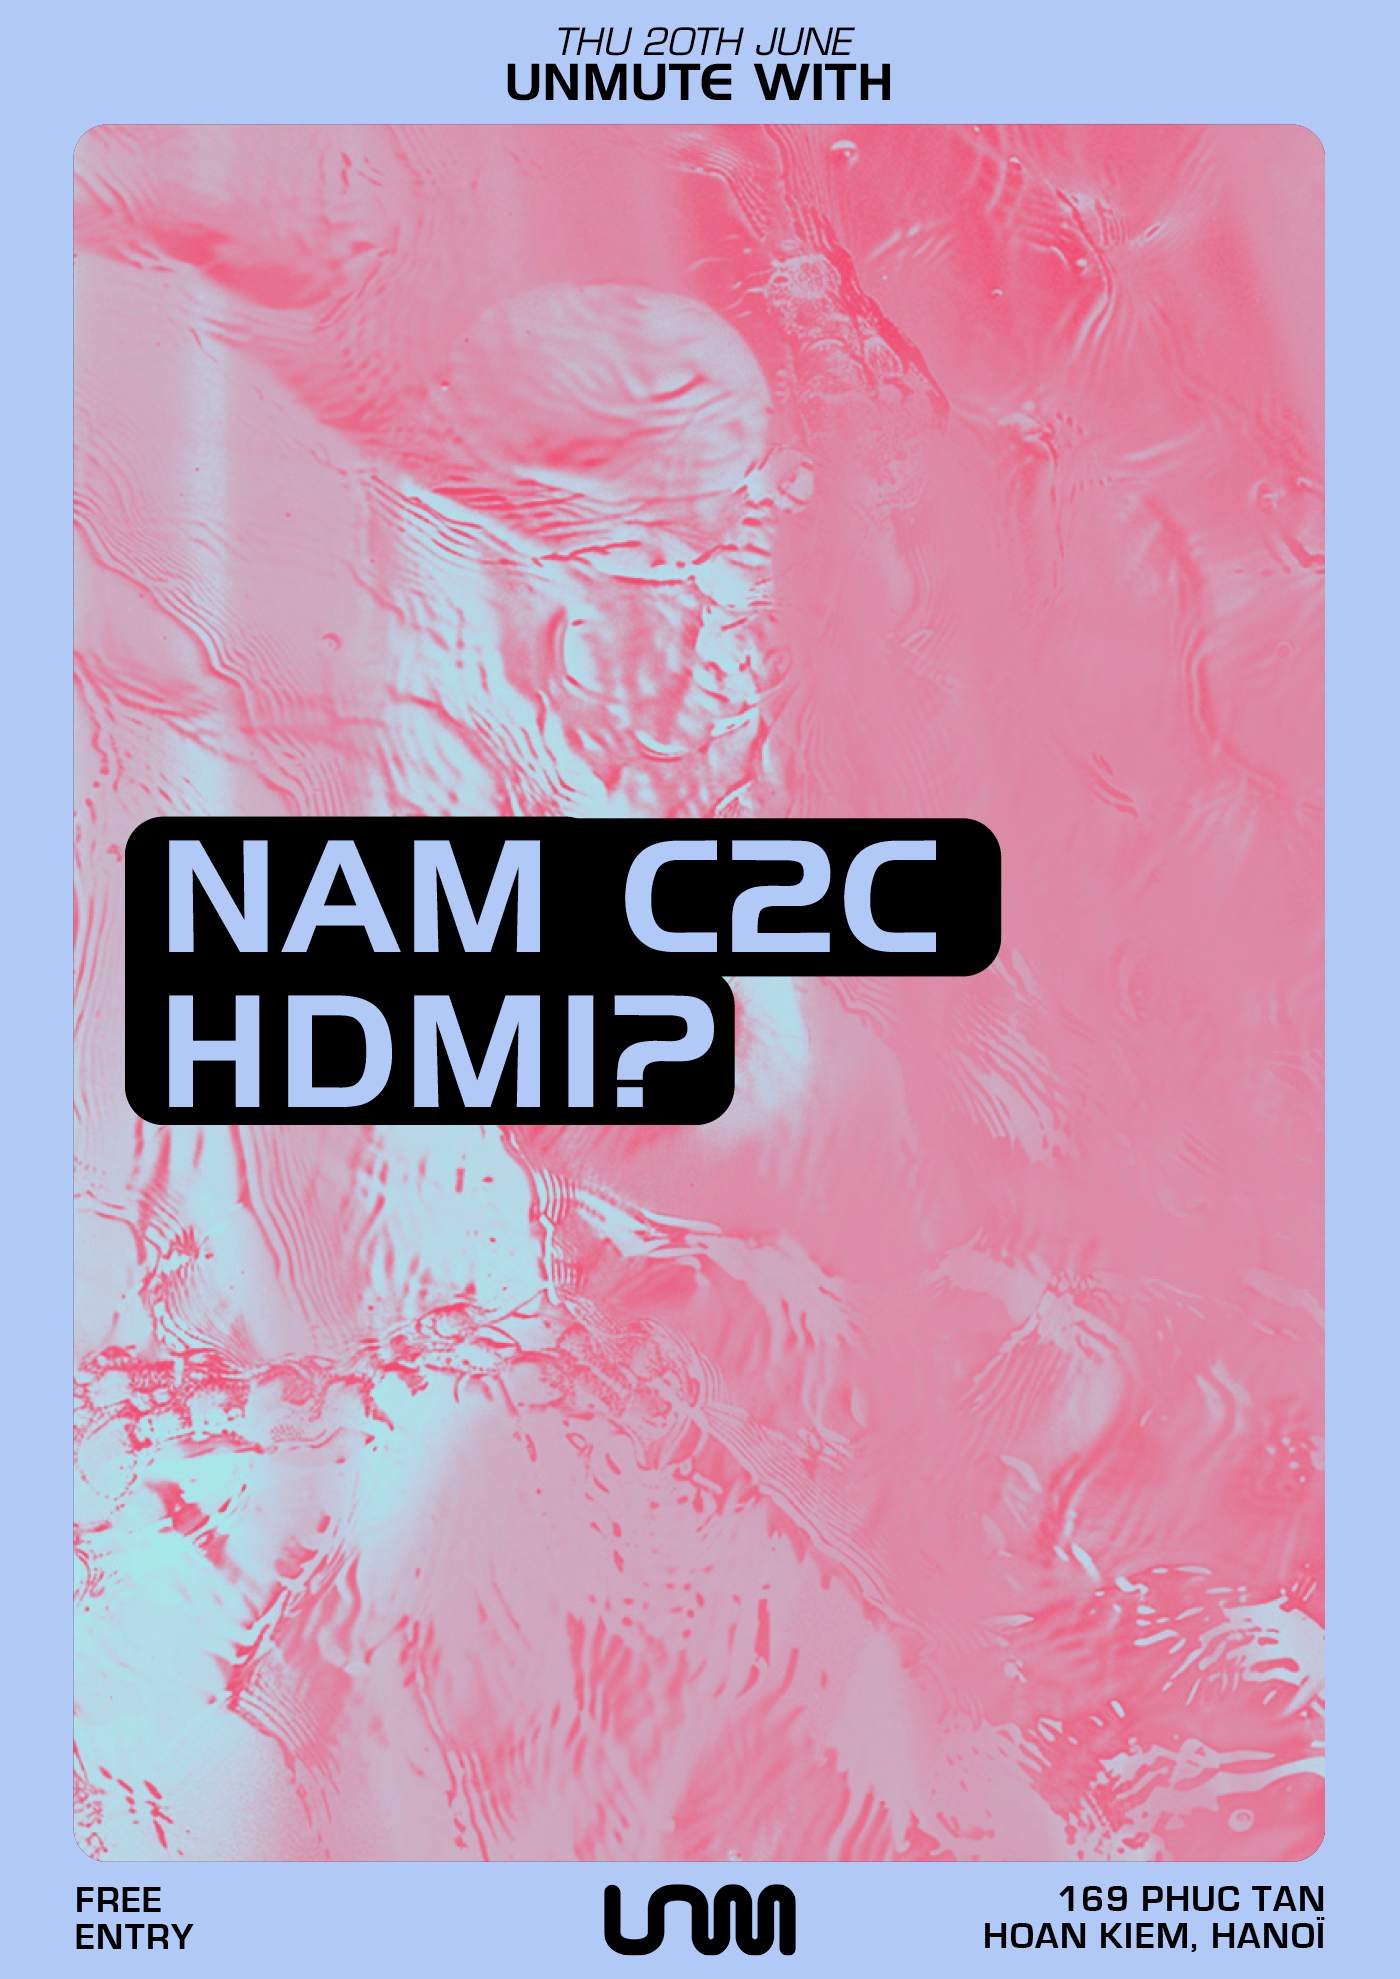 Unmute with Nam C2C, HDMI - Página frontal